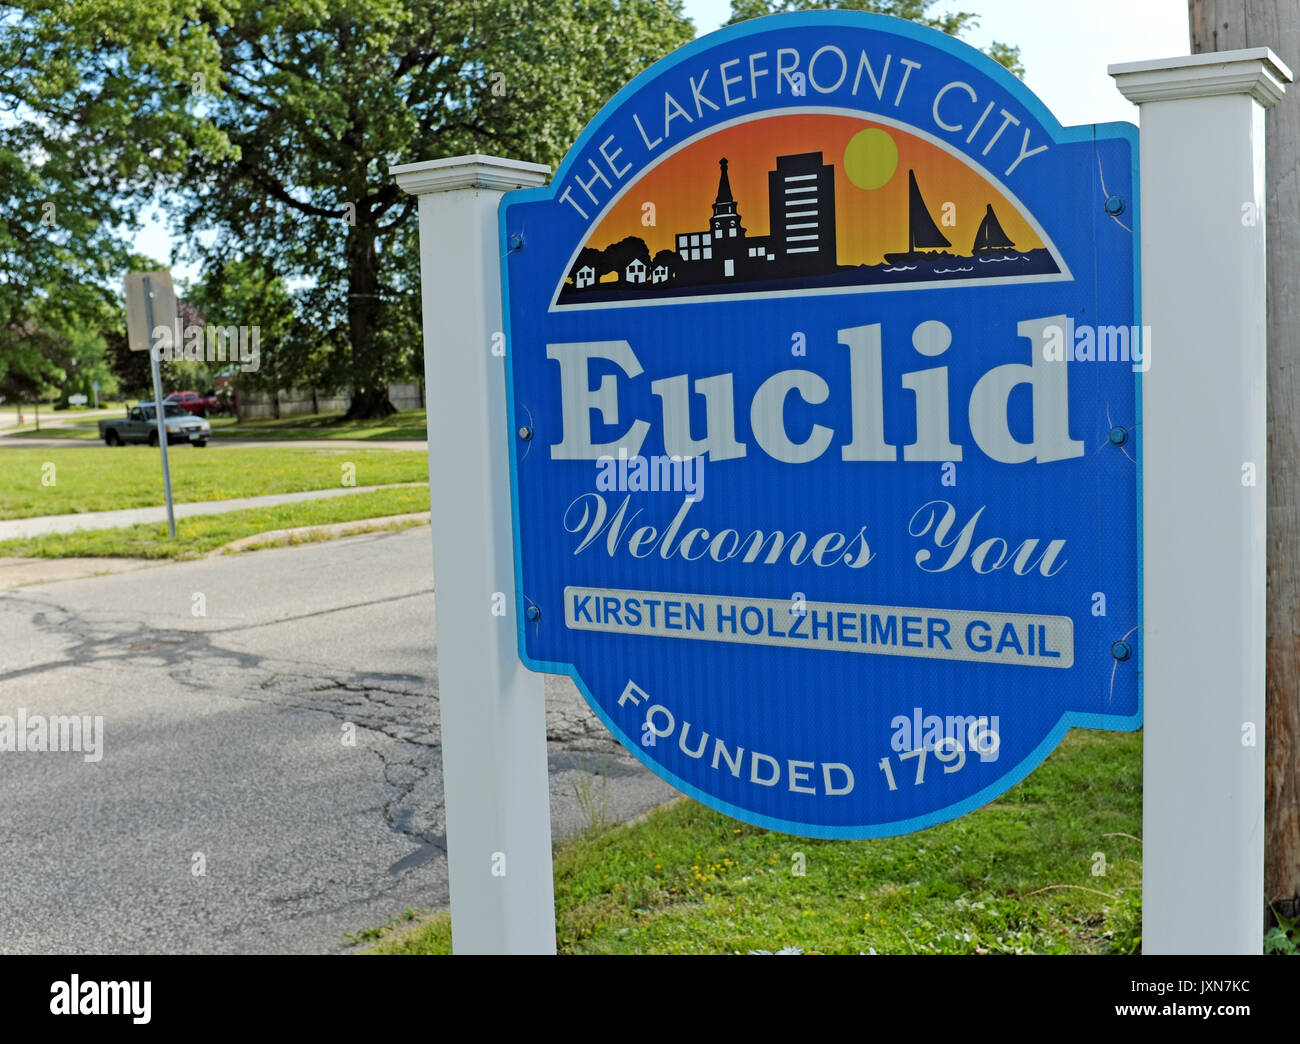 Inscrivez-vous à la ville des gens accueillants d'Euclid, Ohio, USA. Une banlieue de Cleveland, Ohio, ce "Lakefront City' a été l'hôte d'événements dignes. Banque D'Images